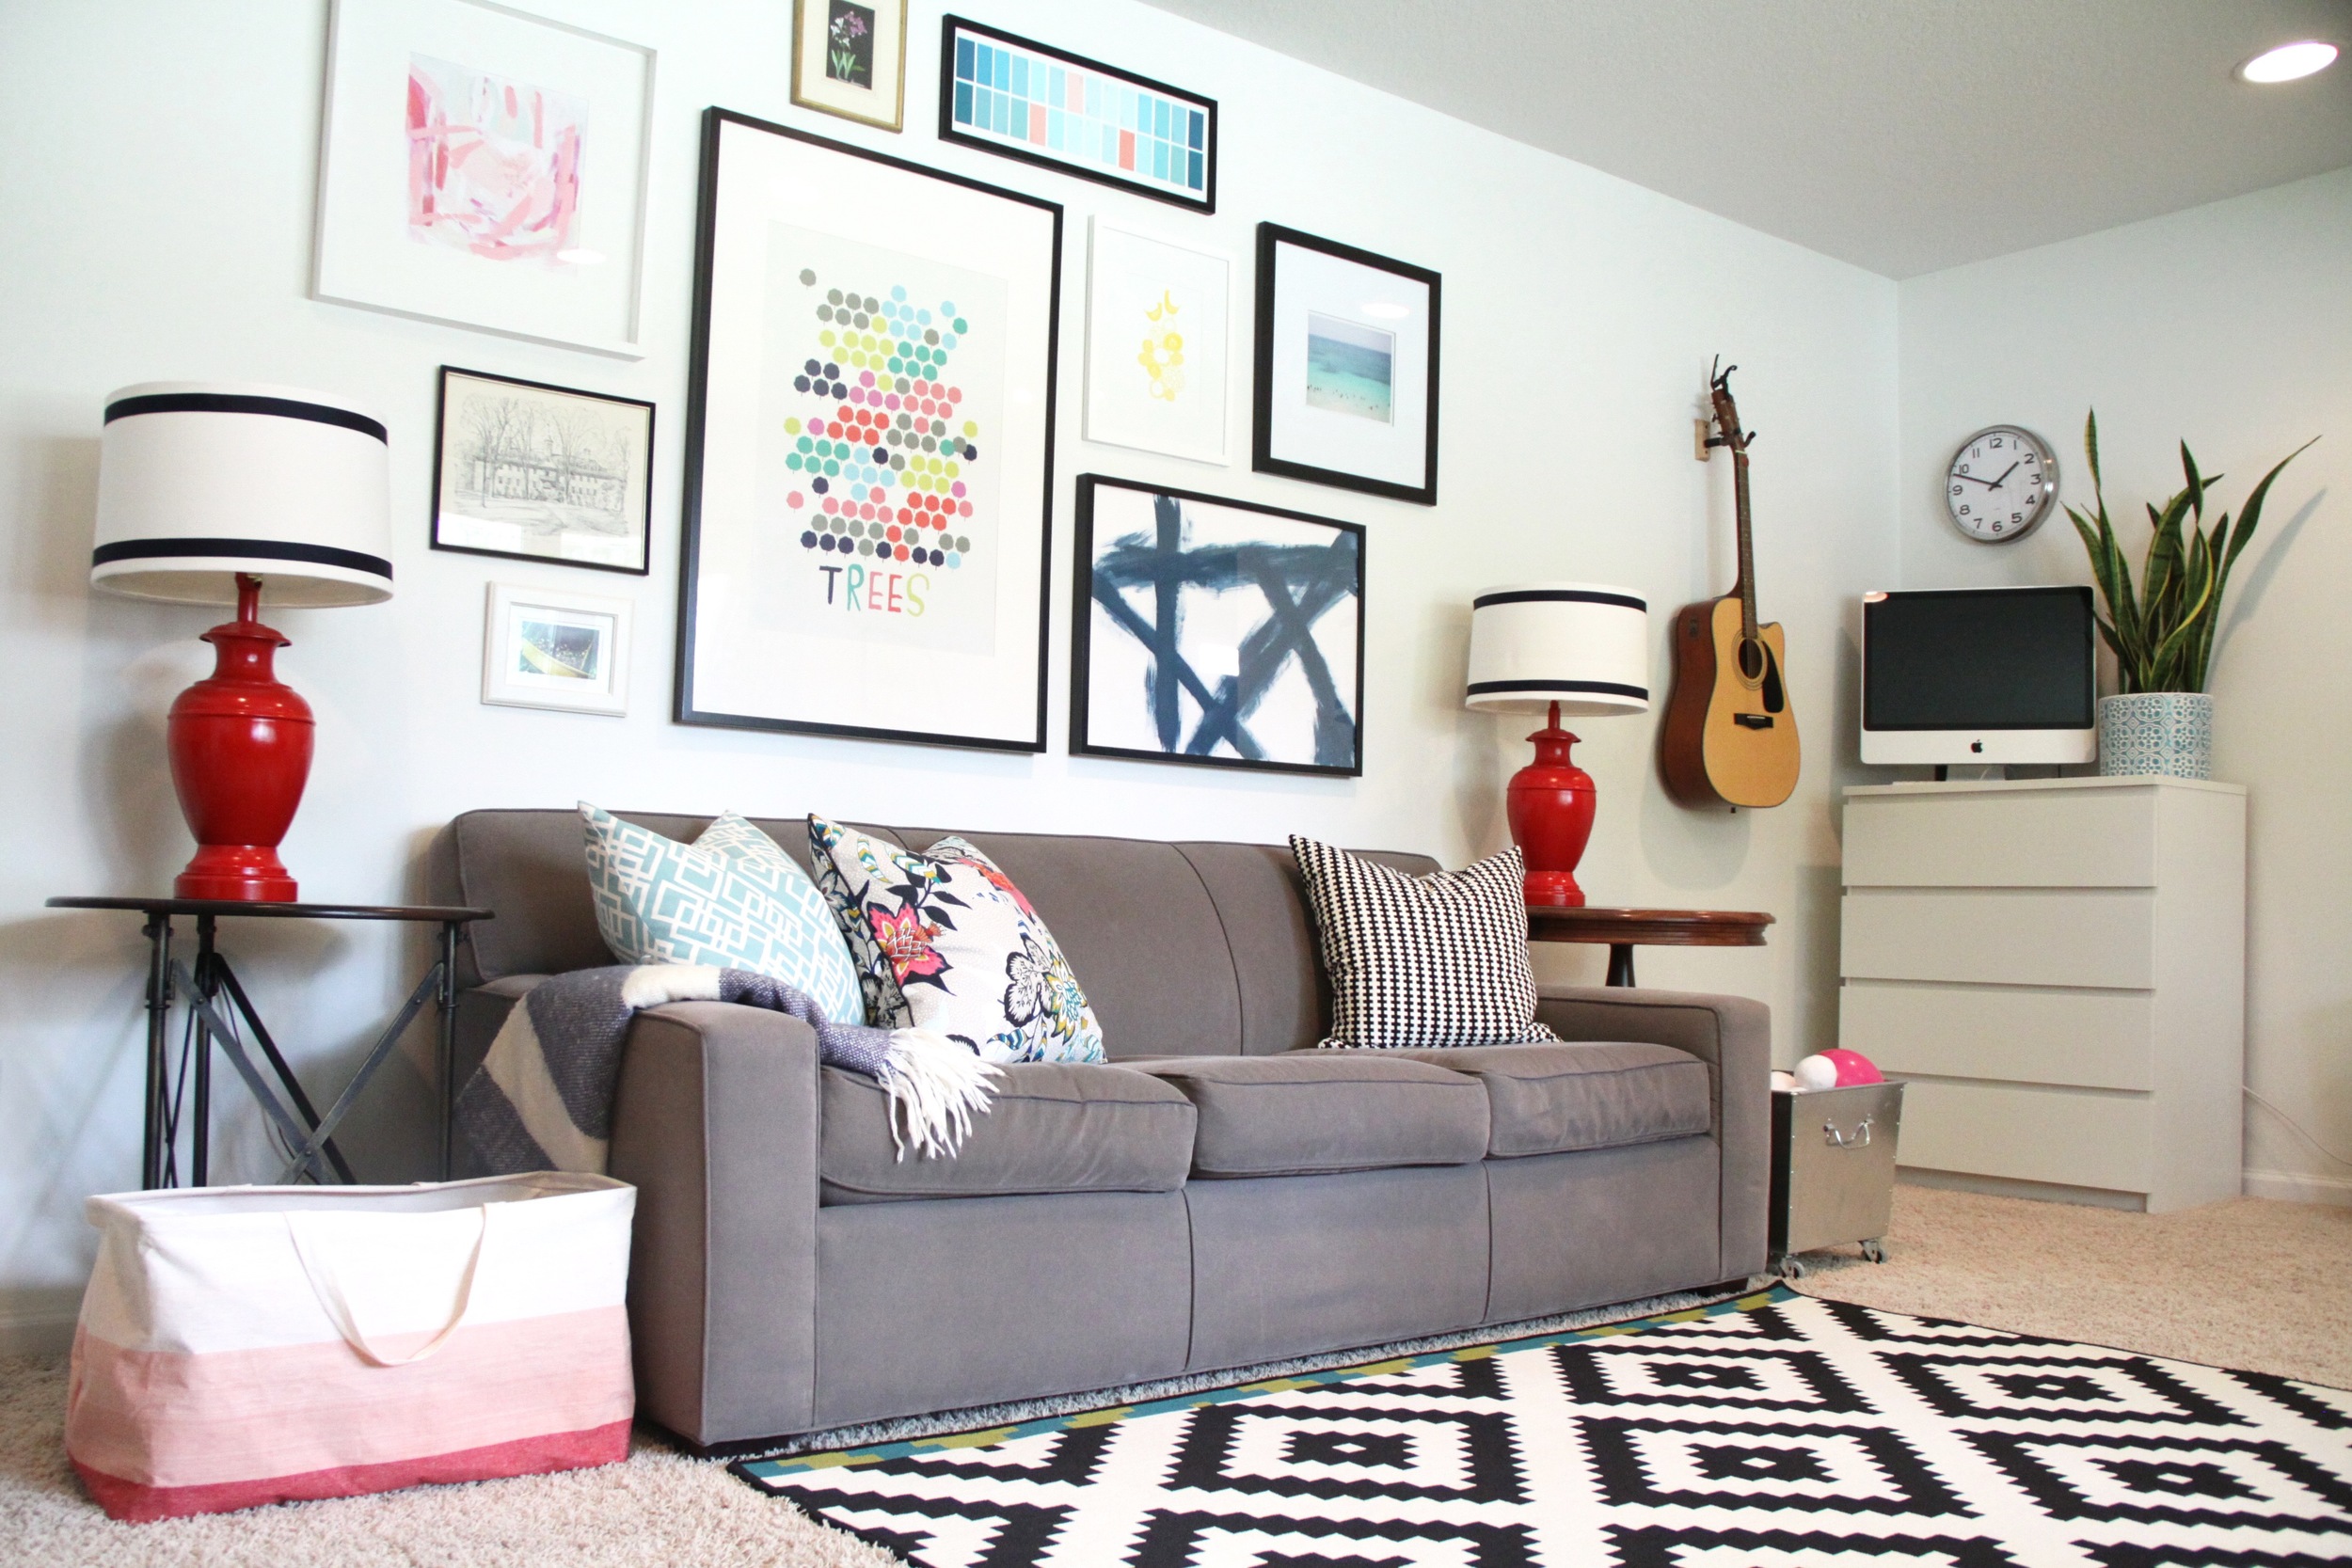 Living Room with Gallery Wall, Color Is Vanilla Milkshake by Benjamin Moore